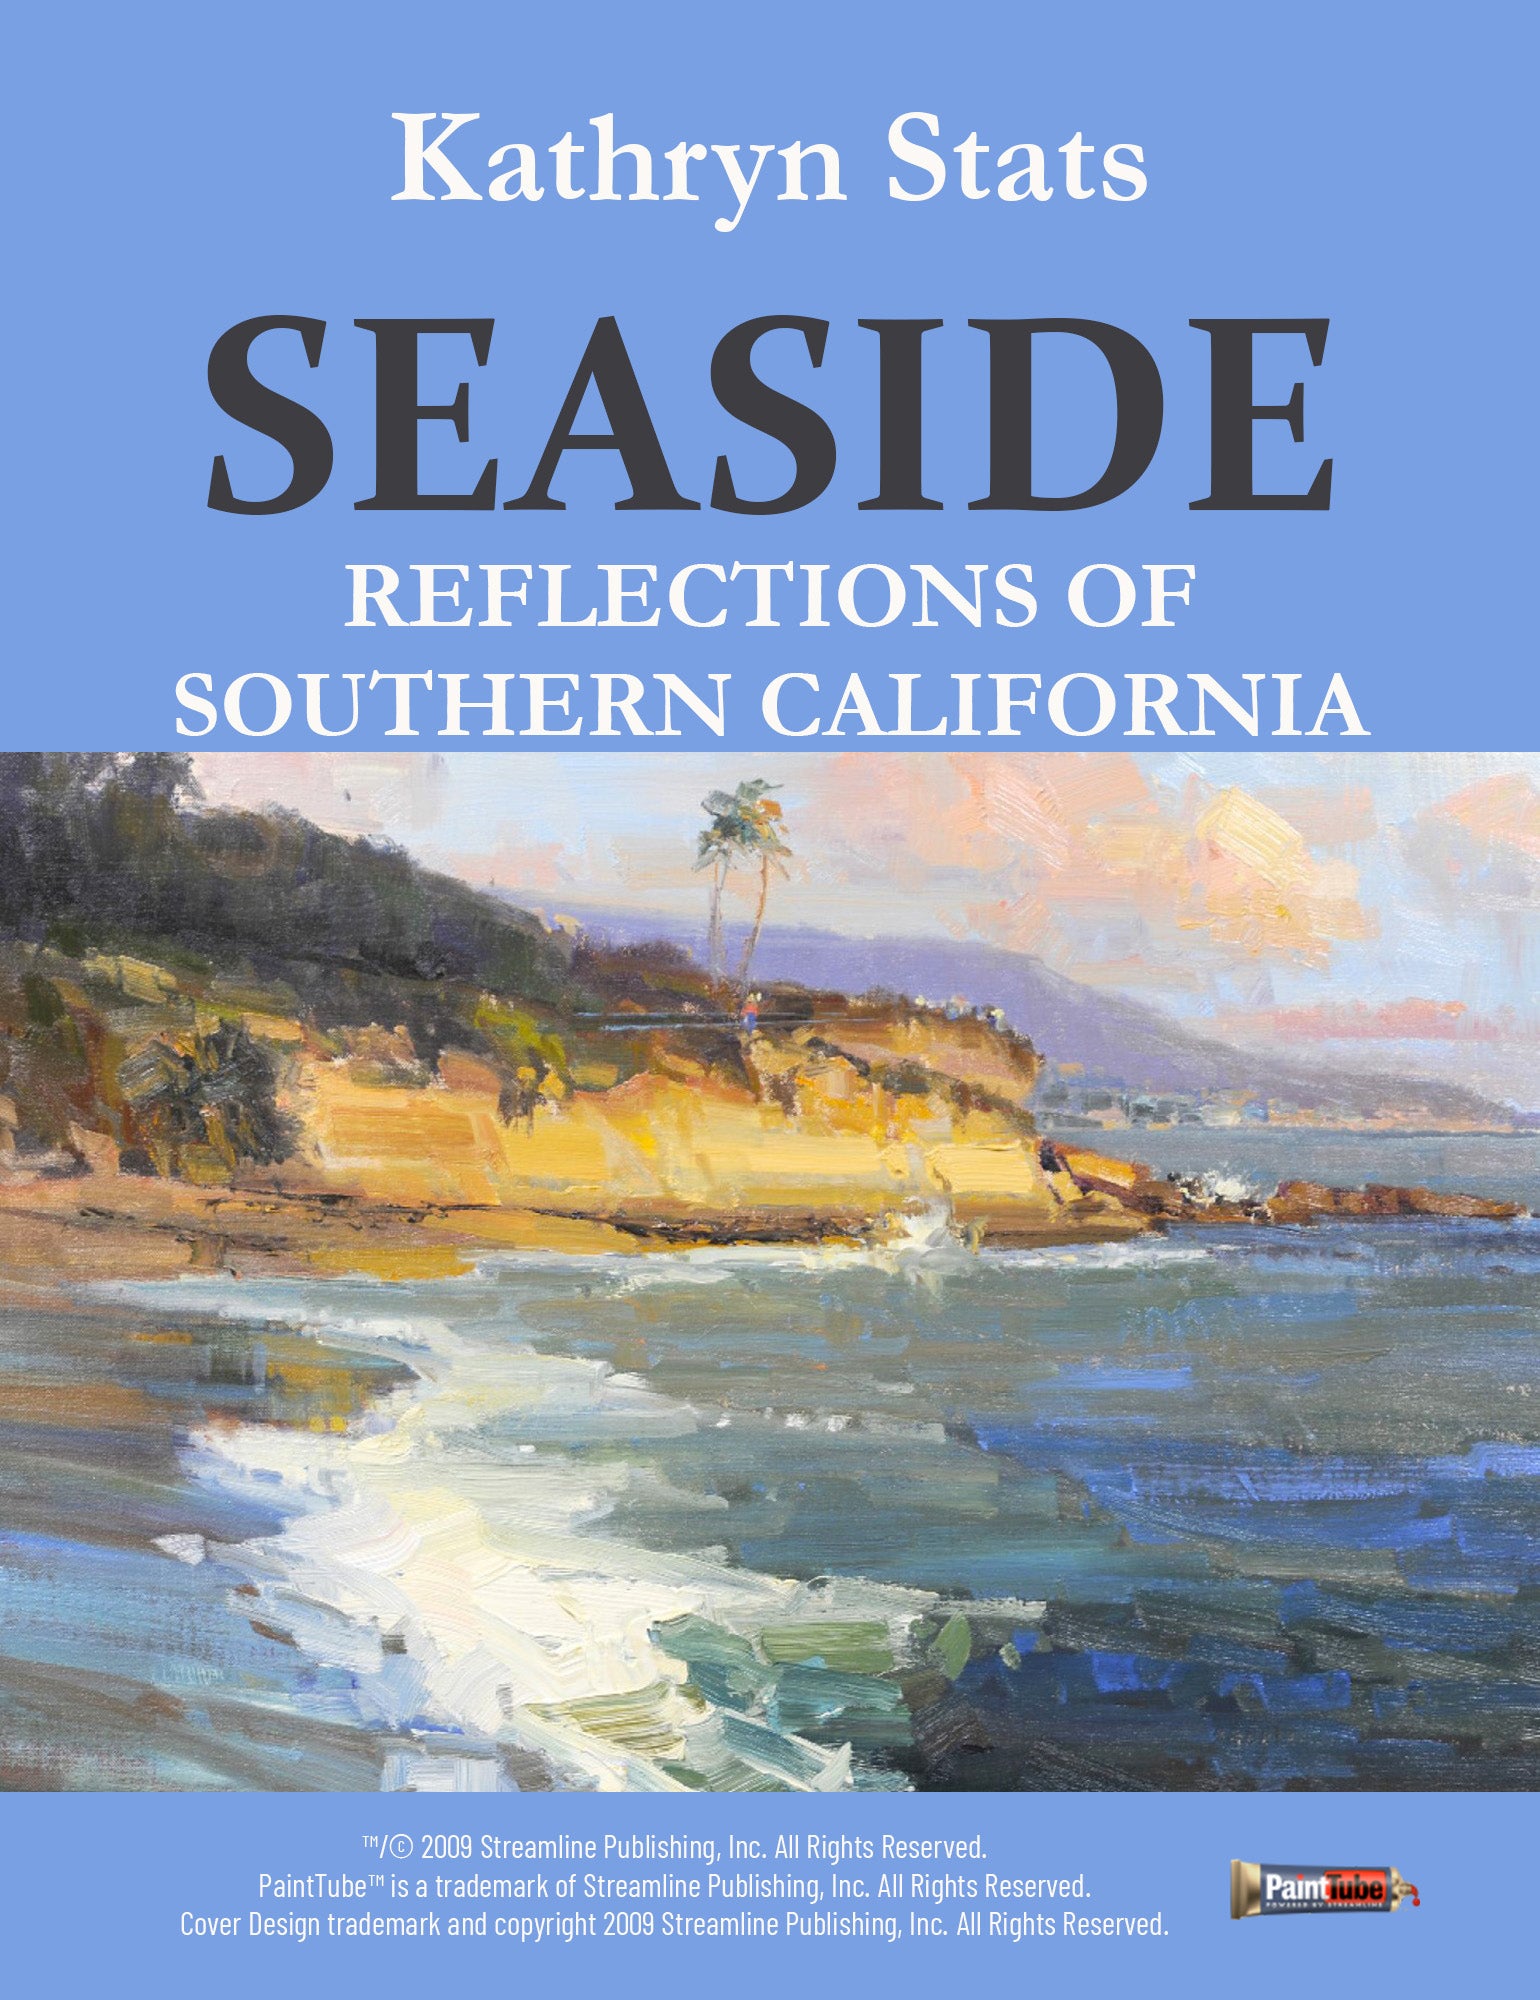 Kathryn Stats: Seaside